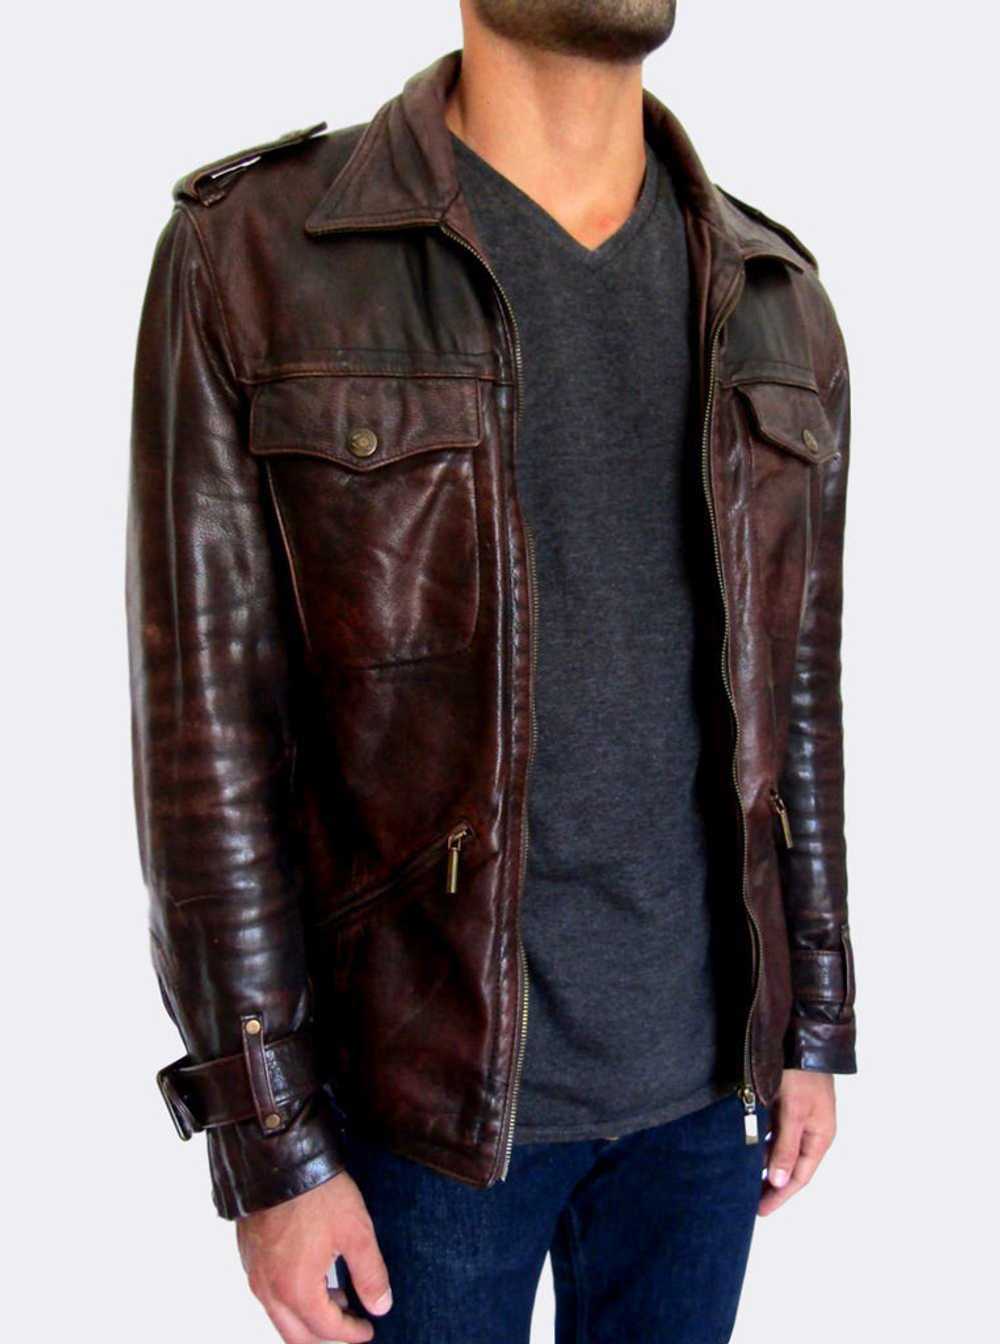 Just Cavalli Distressed Leather Jacket - image 4